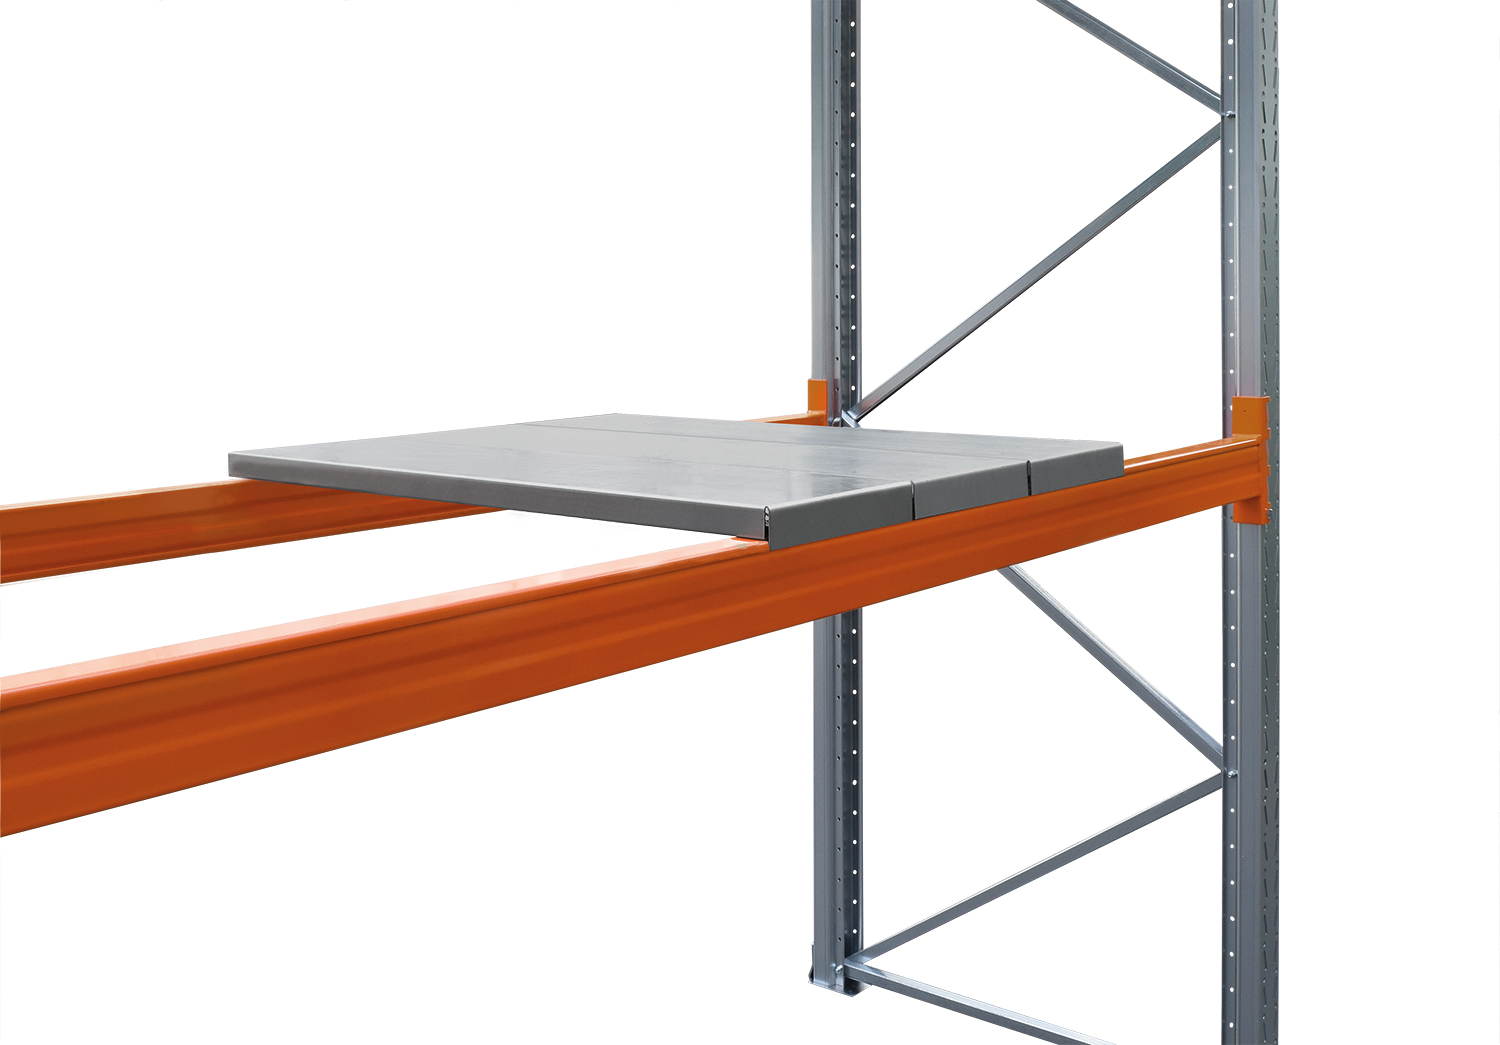 Stahl-Paneelböden-Ebene für SLP Palettenregal Schraub-Stecksystem T-Profil | 6 Segmente | BxT 182,5x90cm | Verzinkt